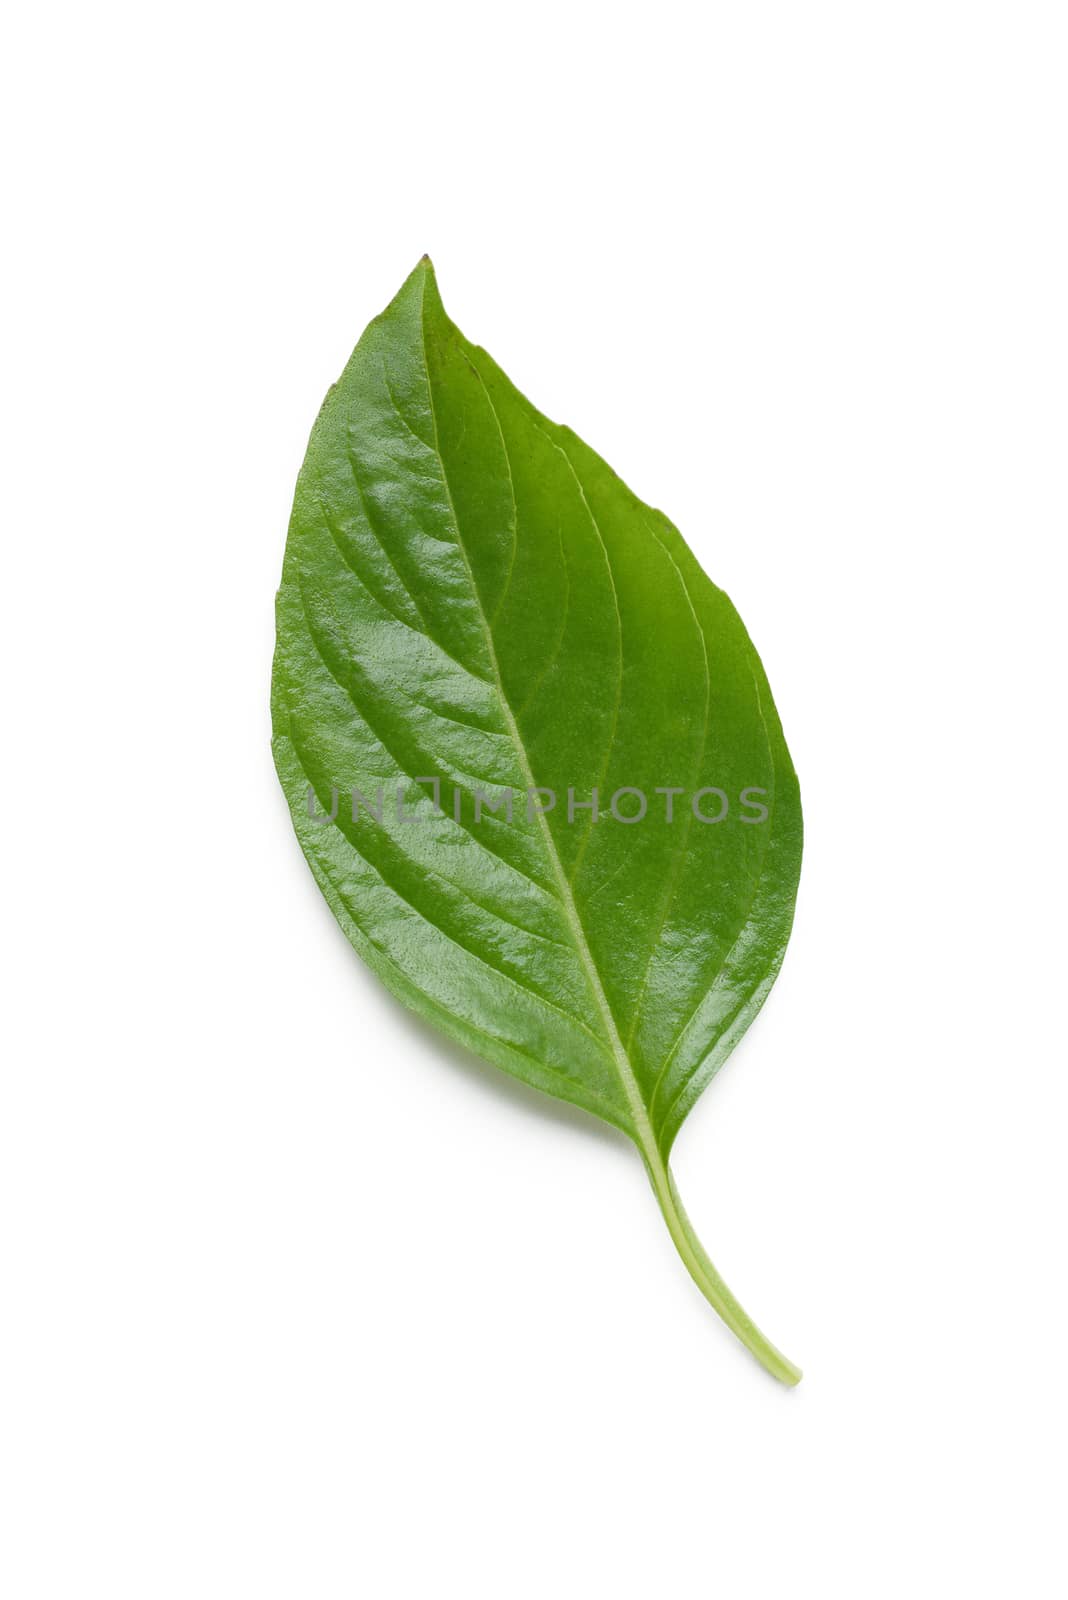 basil leaf by antpkr